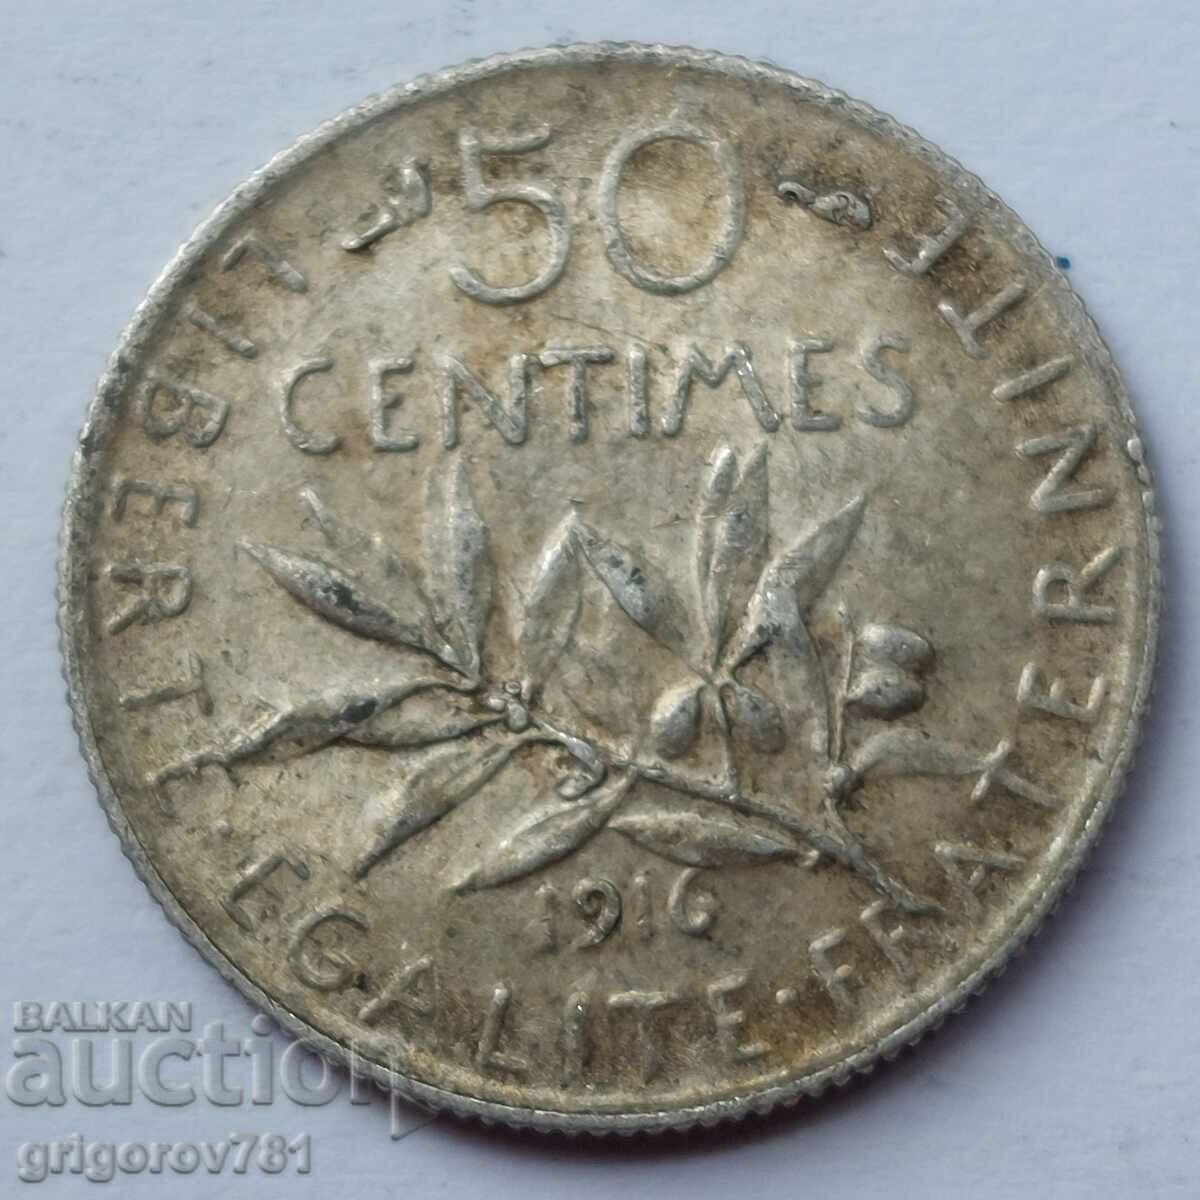 Ασημένιο 50 εκατοστά Γαλλία 1916 - ασημένιο νόμισμα №57